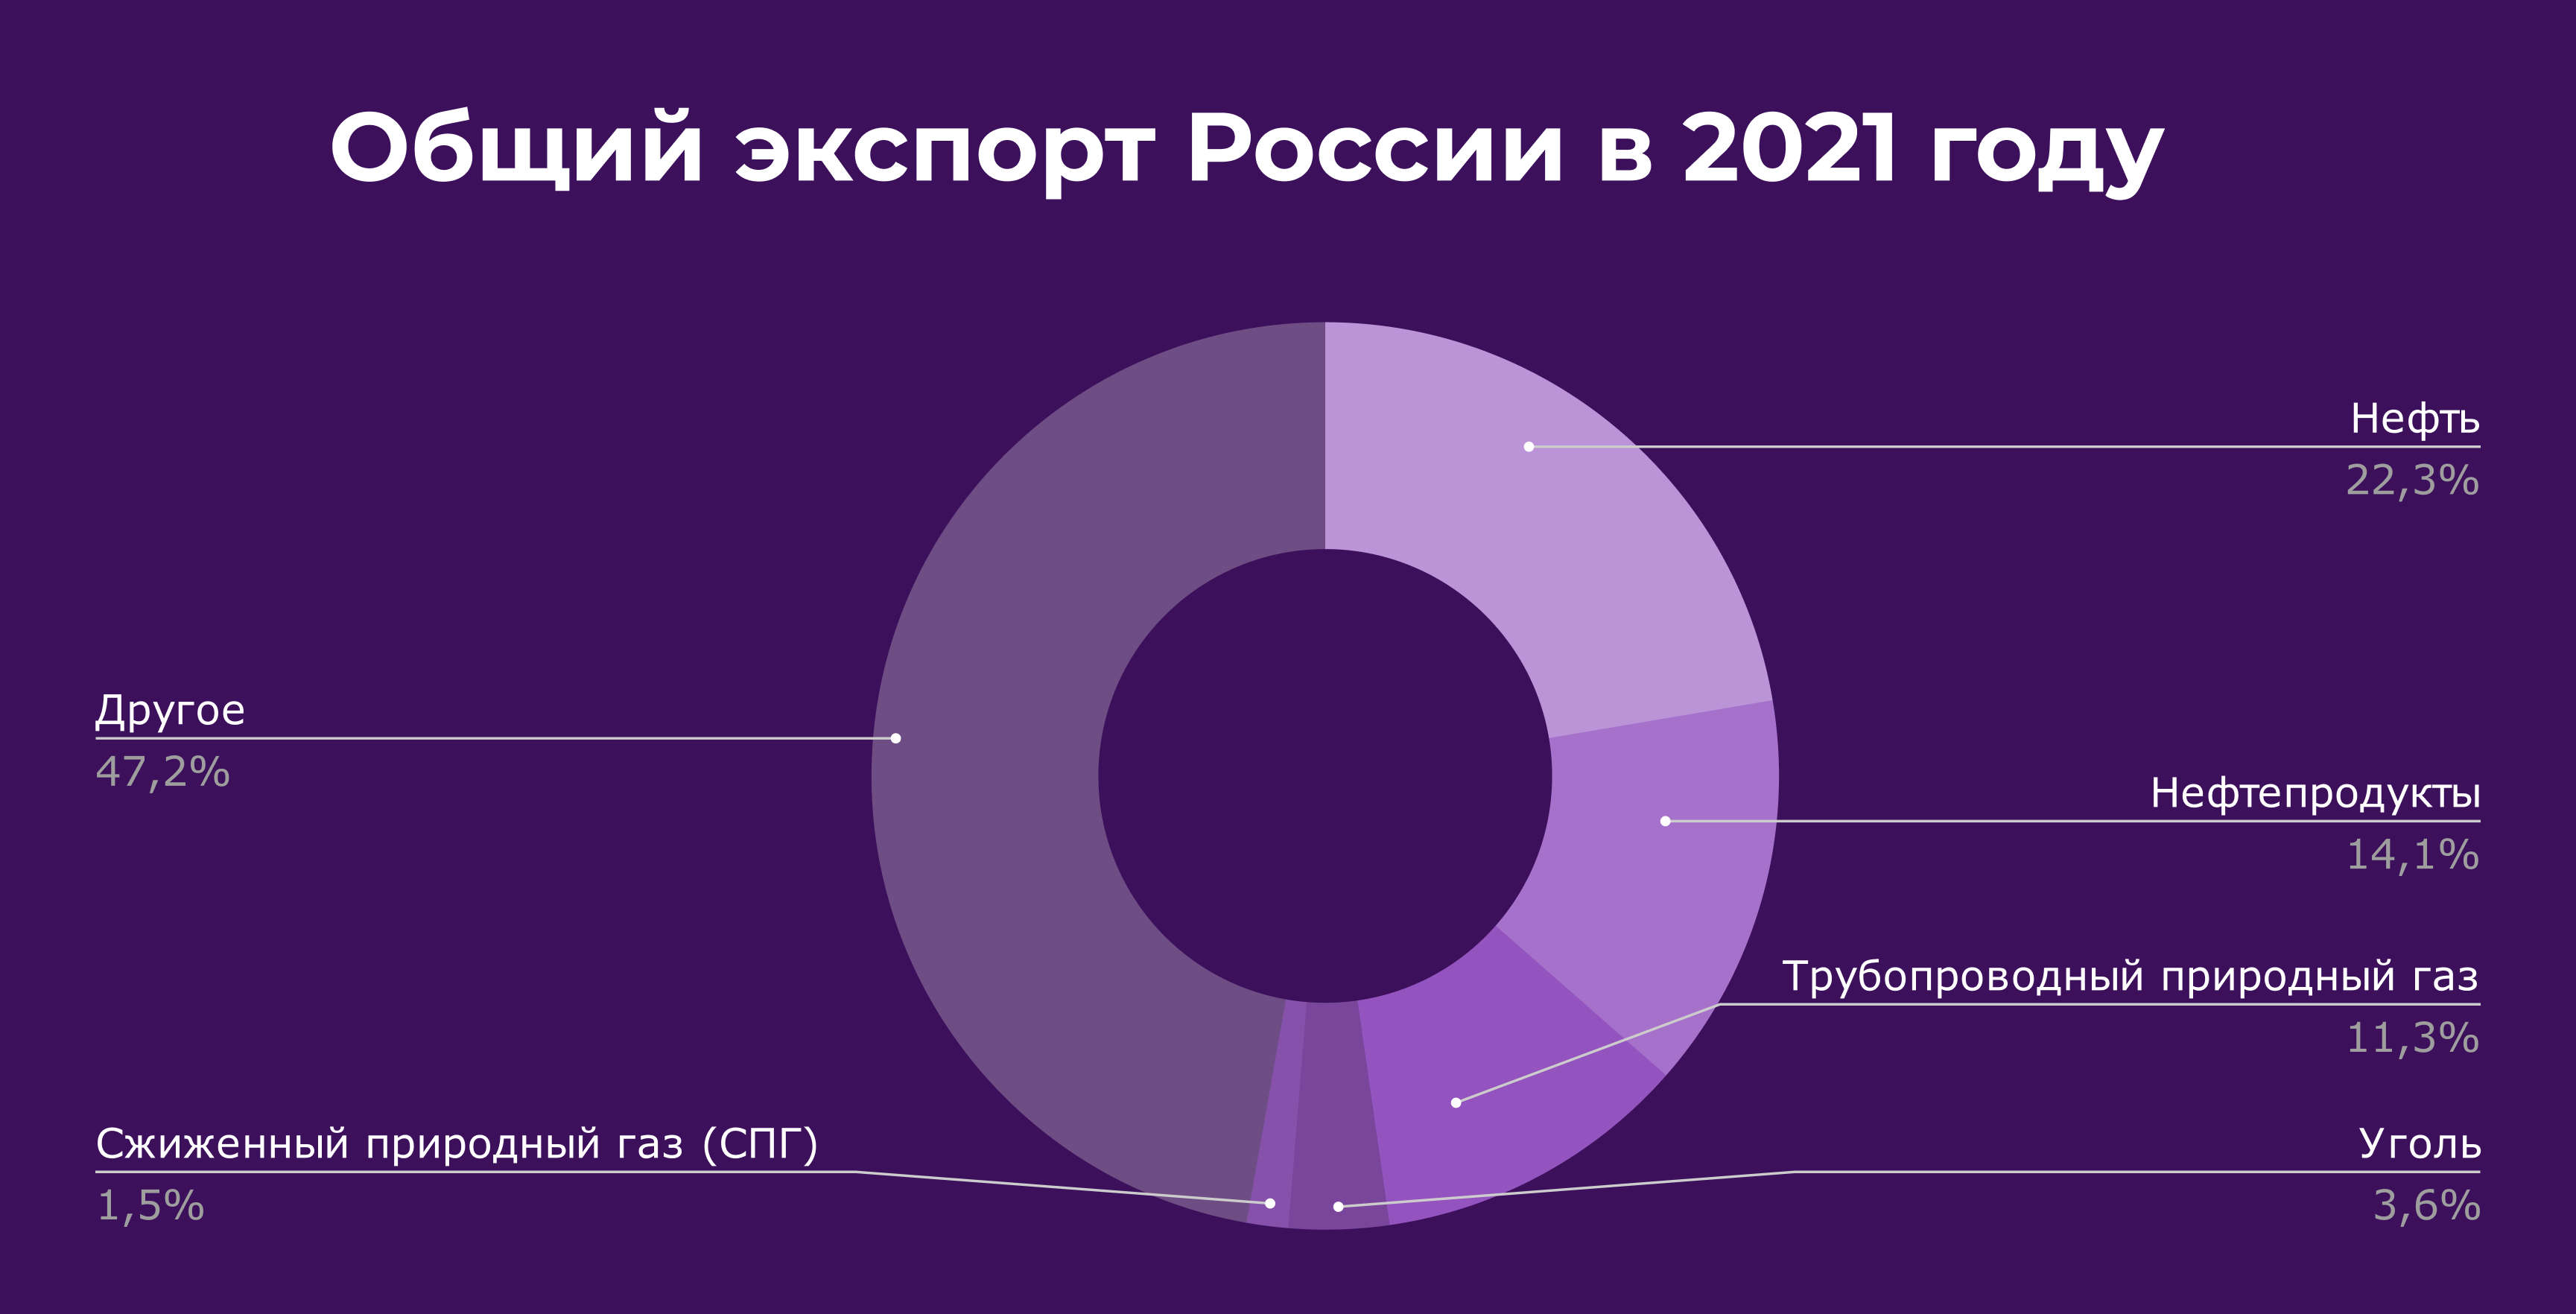 Общий экспорт России в 2021 году